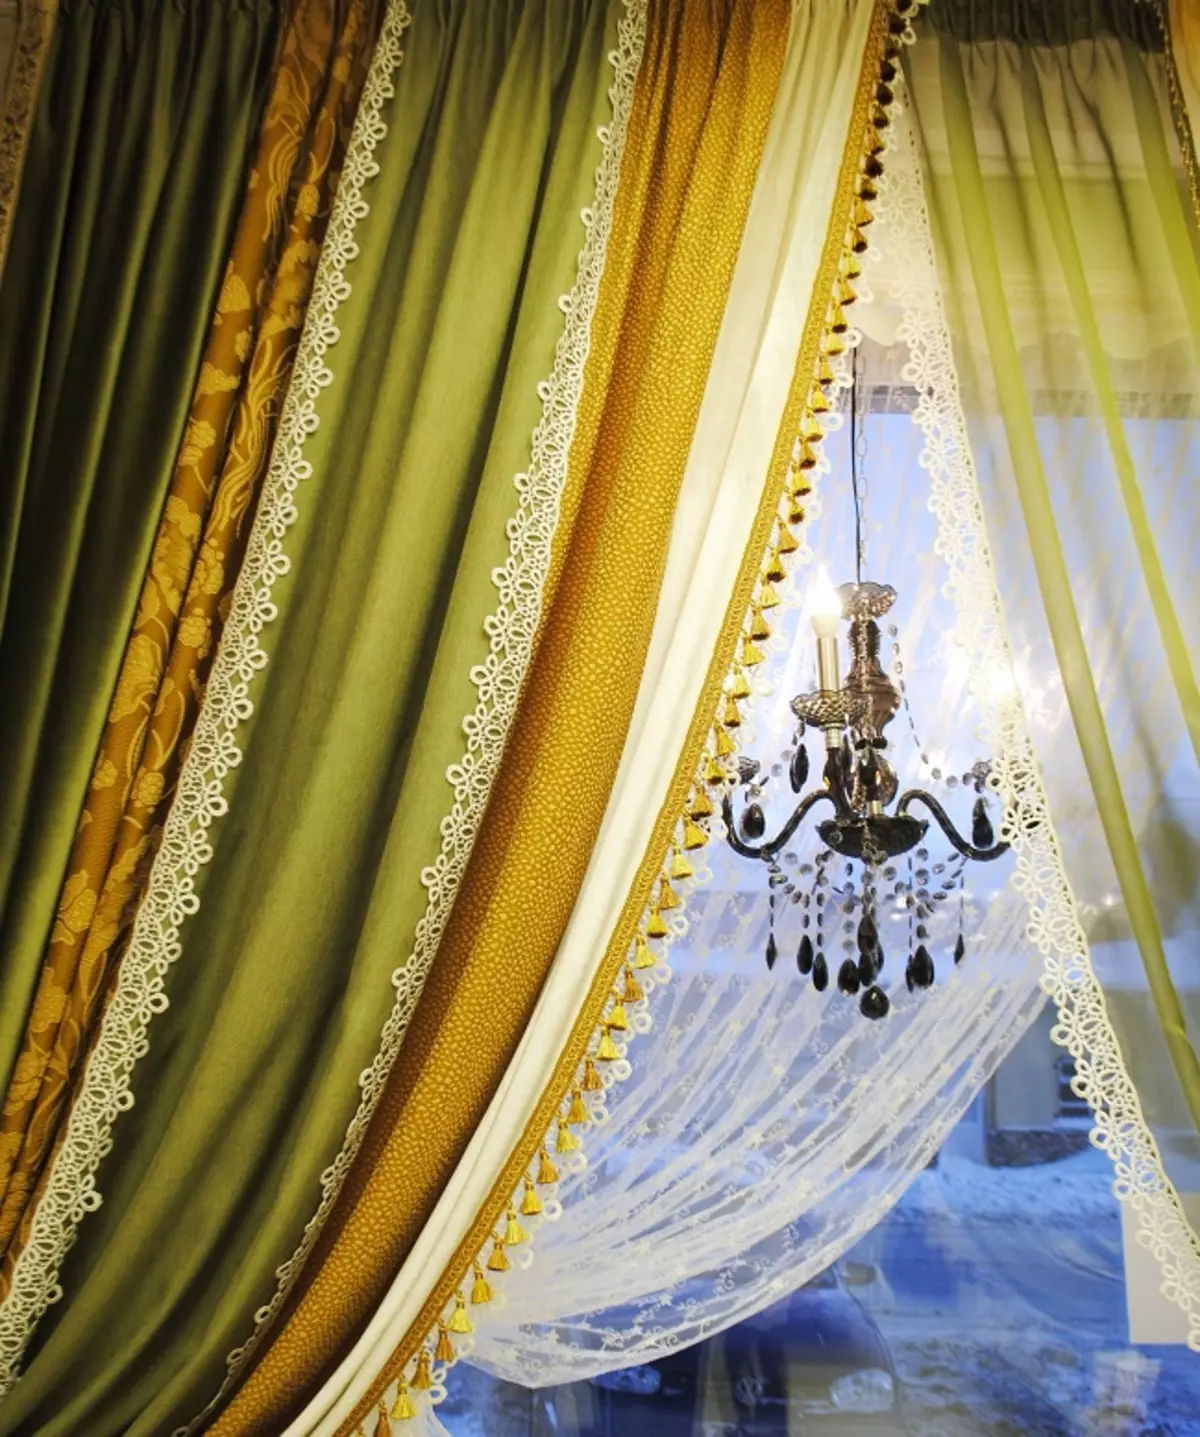 绿色窗帘在客厅内部（51张照片）：绿色窗帘设计在大厅里。内部深绿色和其他色调的窗帘 9790_32